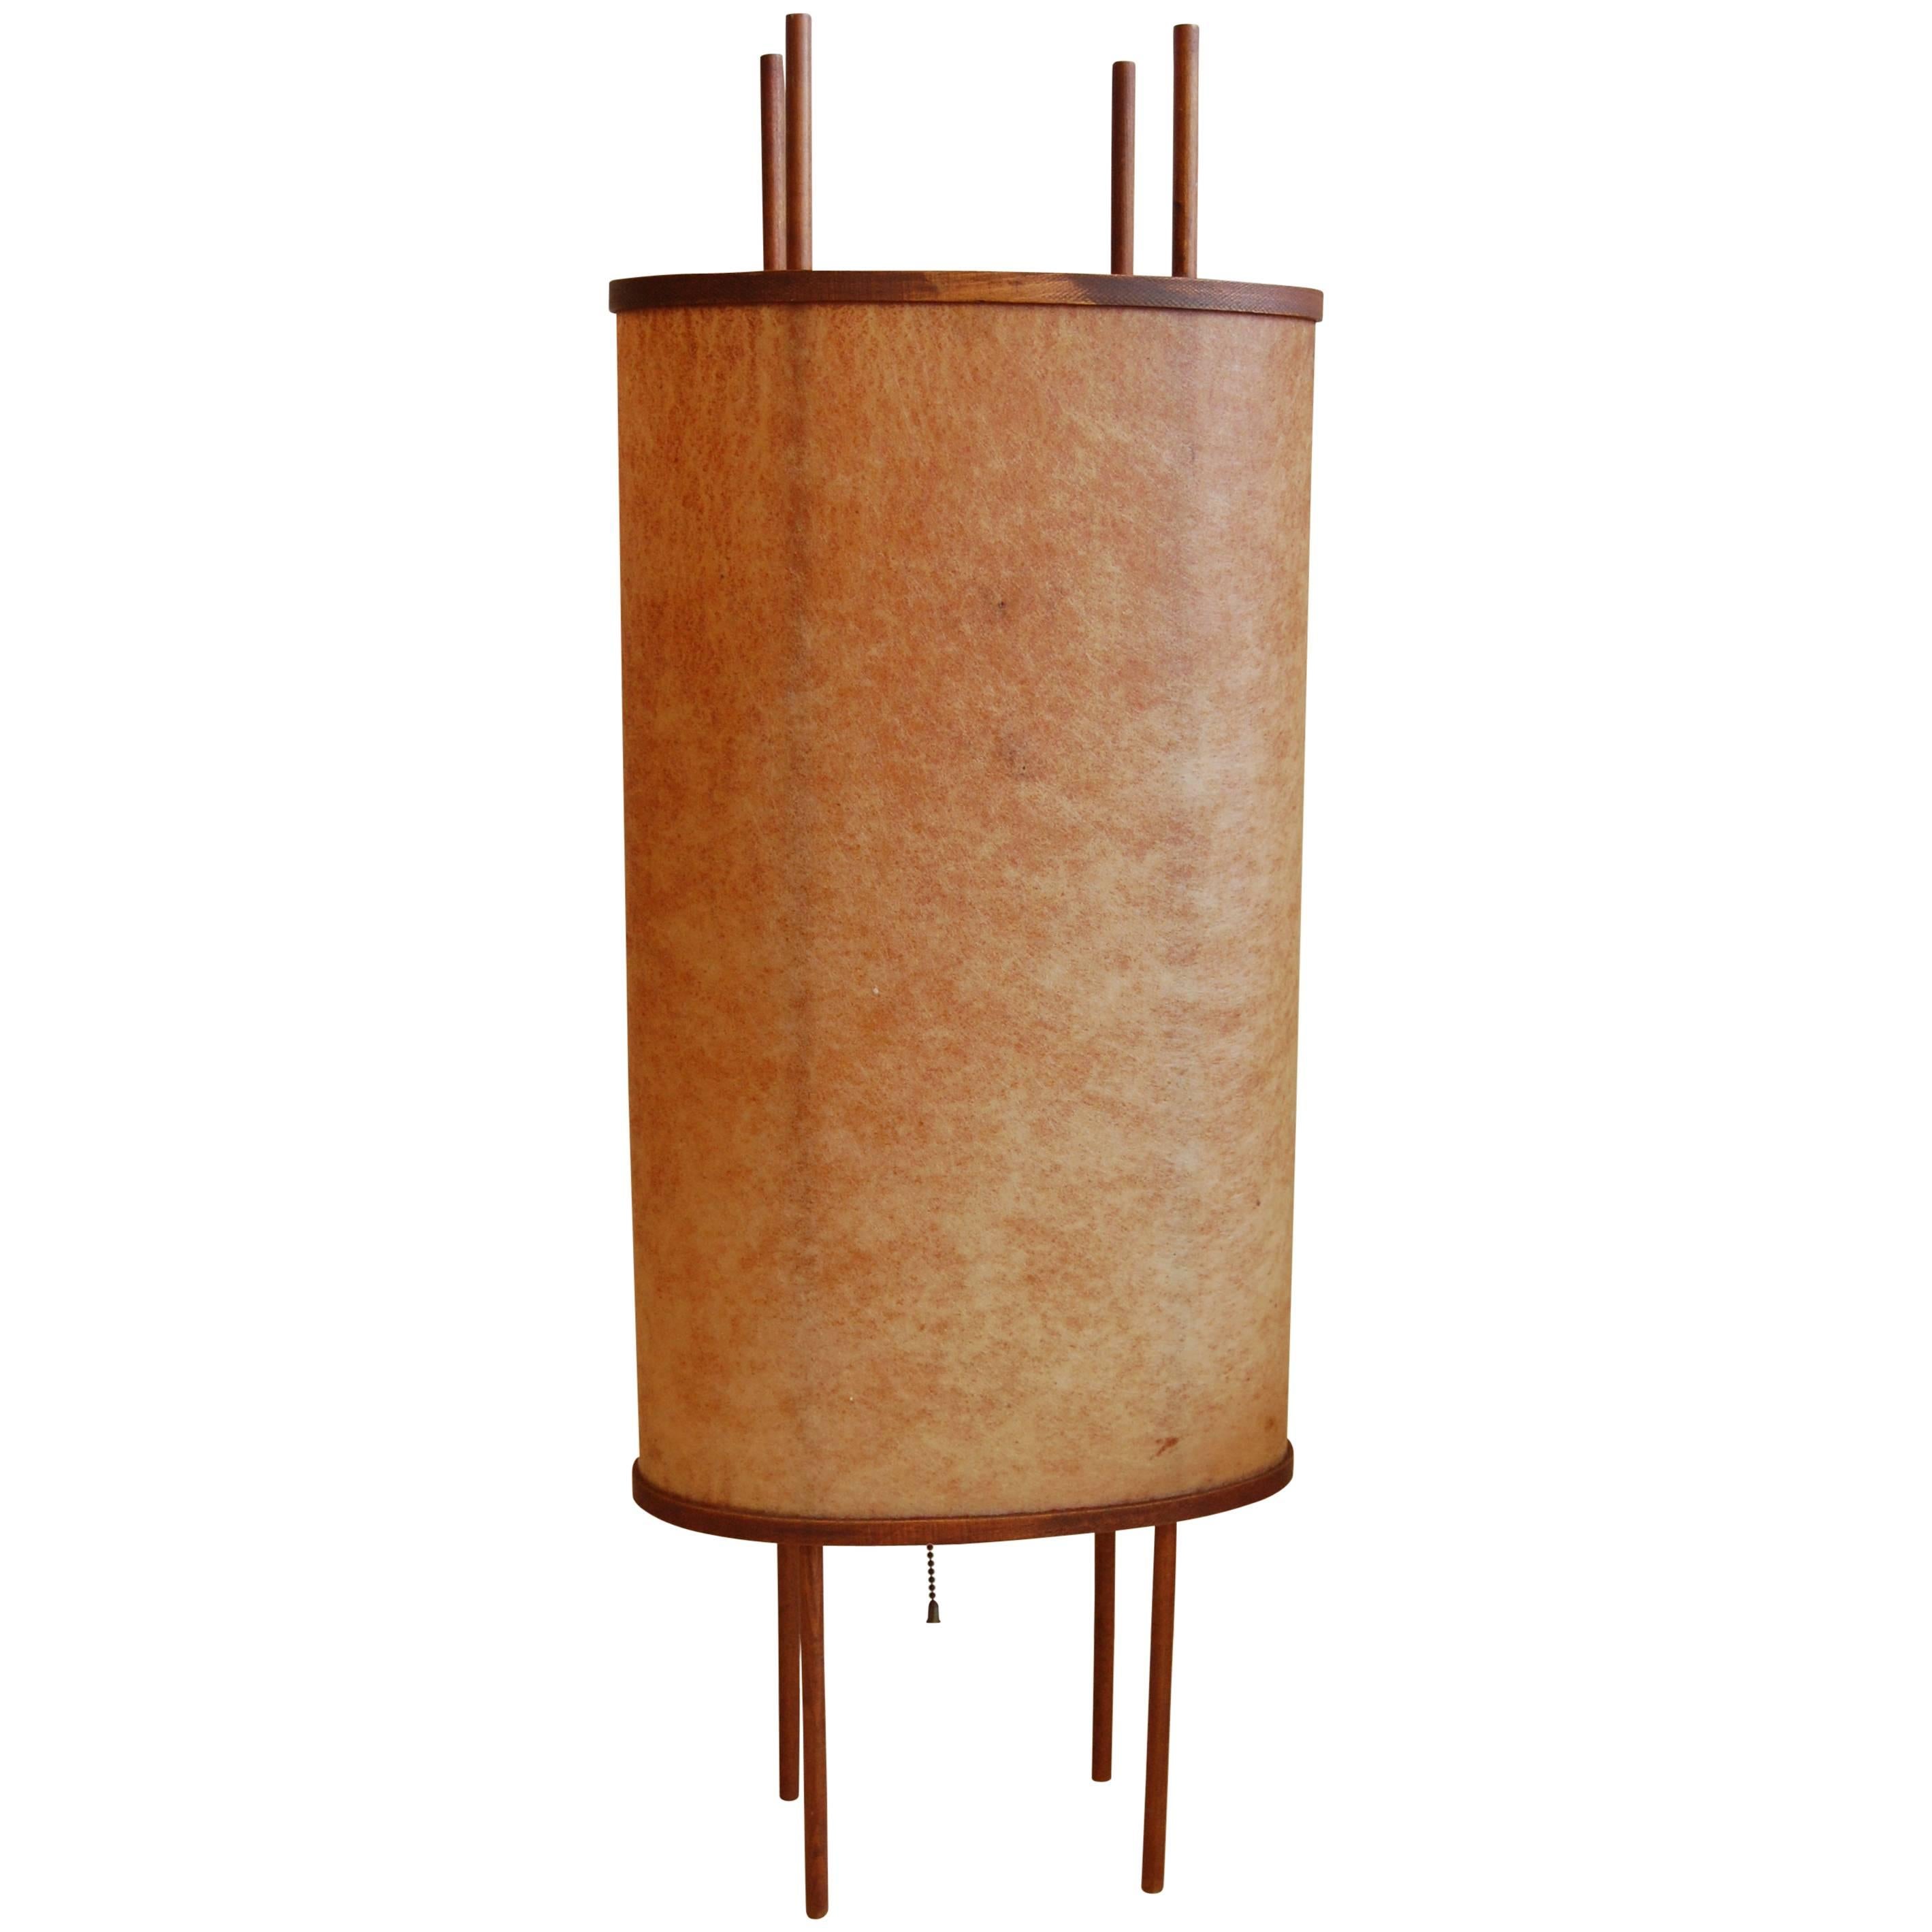 1950s Japanese Modernist Table Lamp